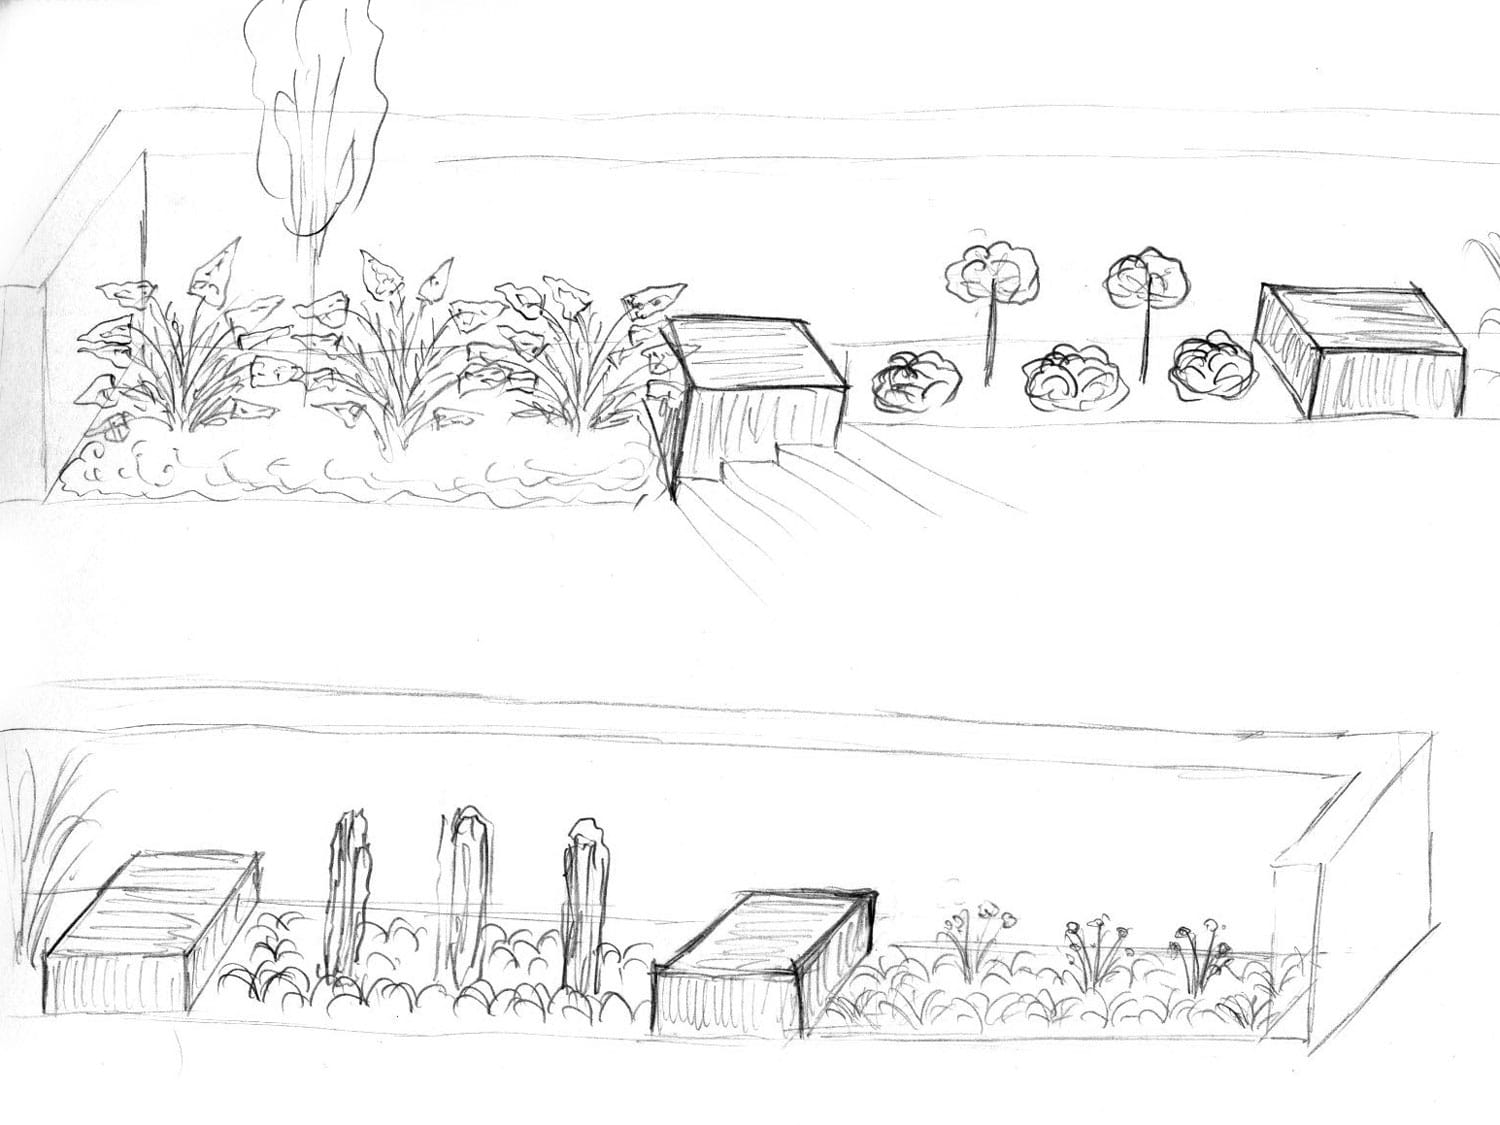 projektowanie ogrodów